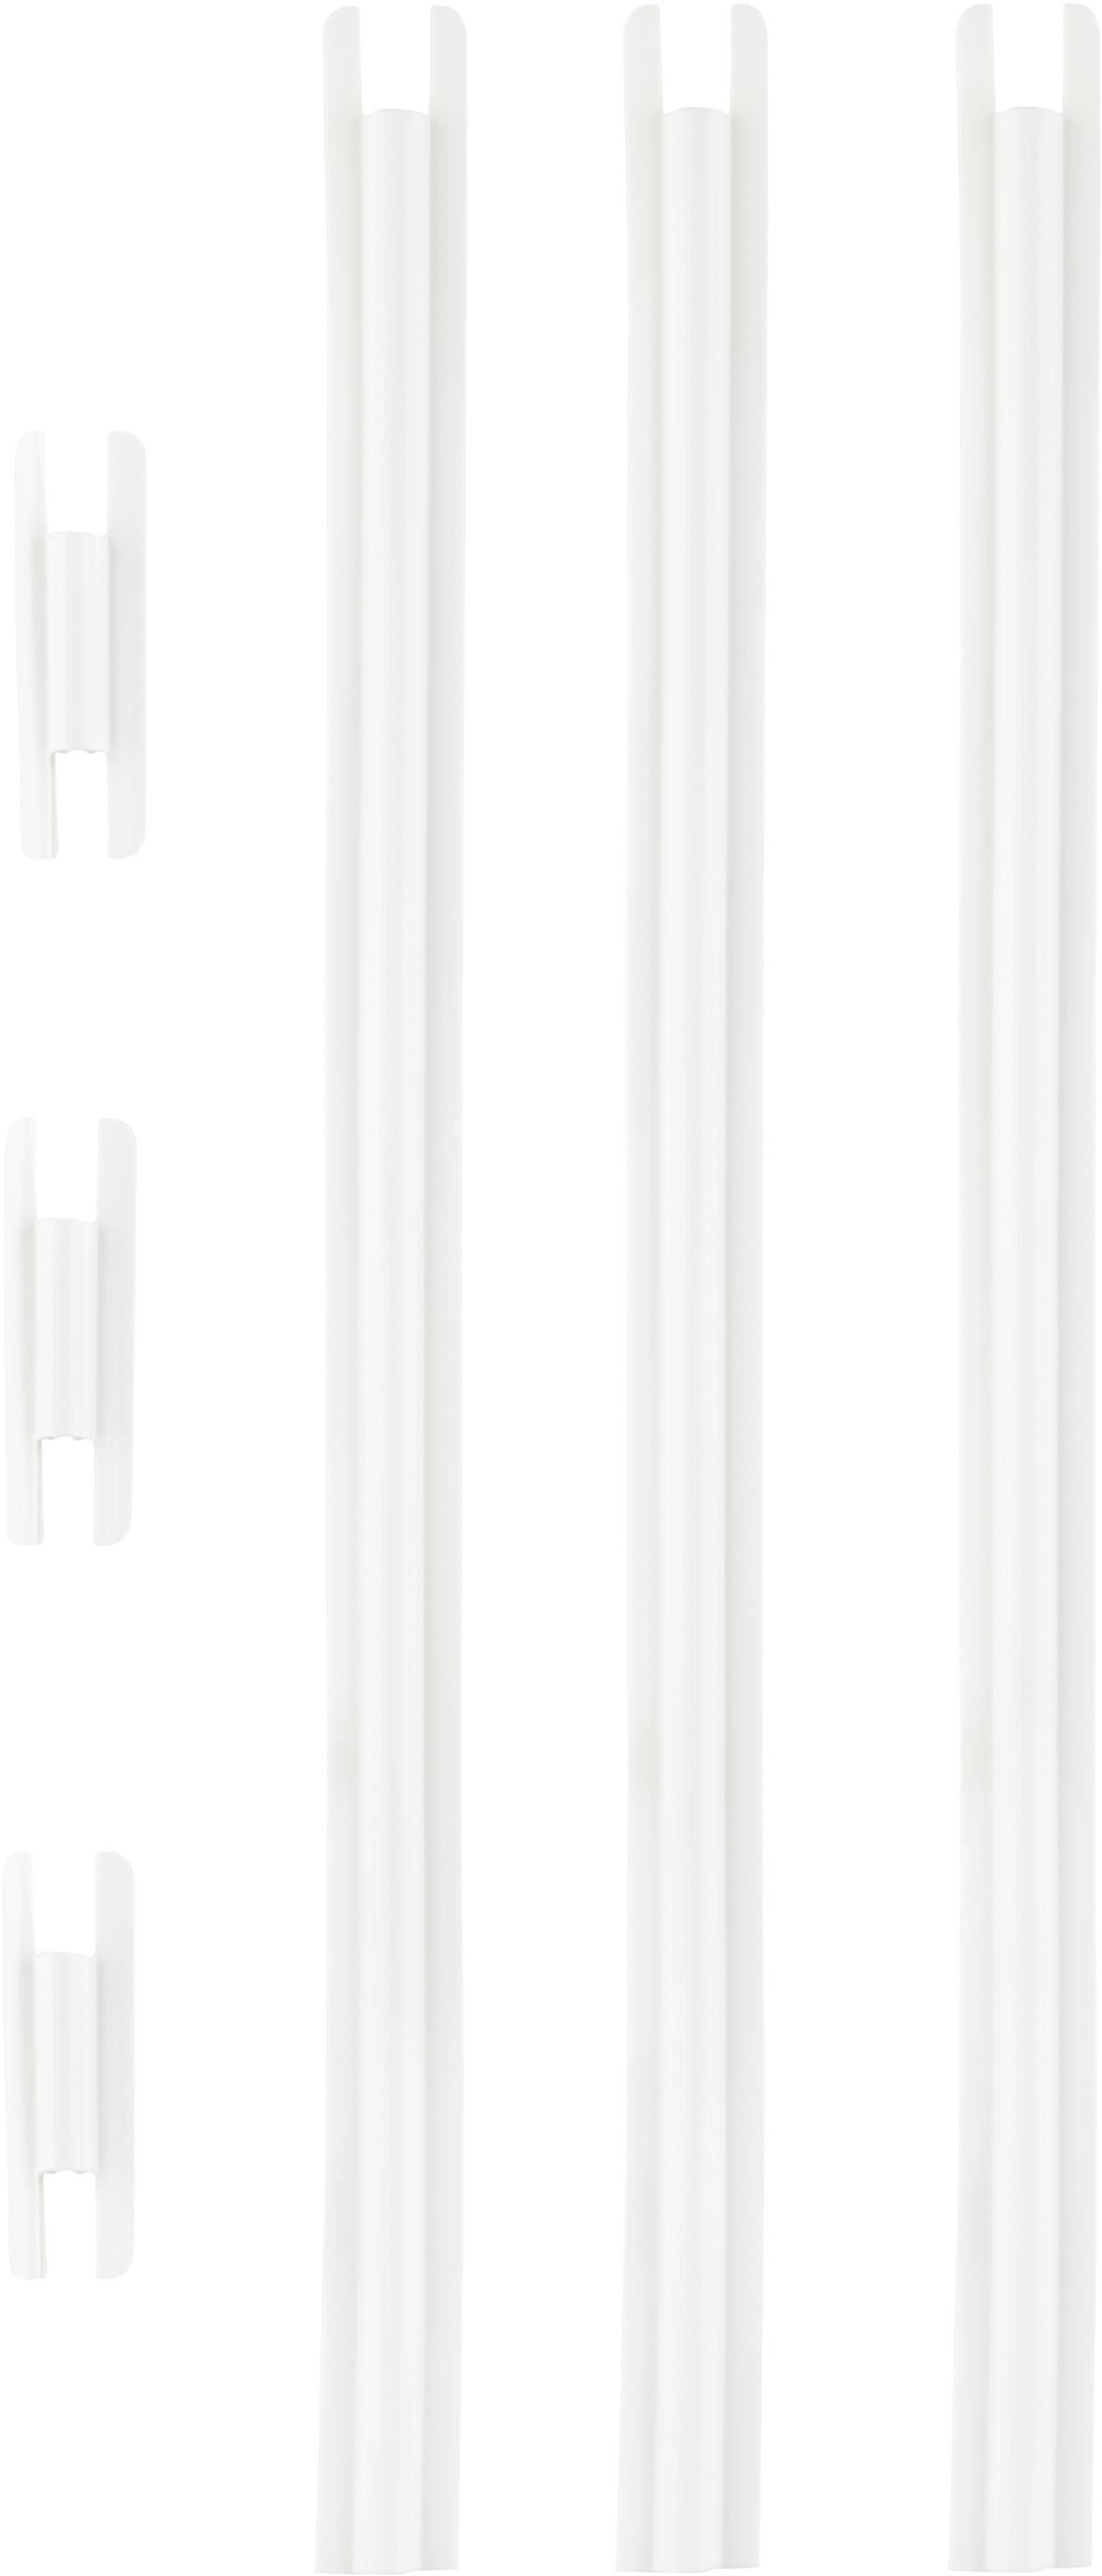 Shimano Ultegra 6770 Di2 Cable Cover Sheath For Sd50 - White